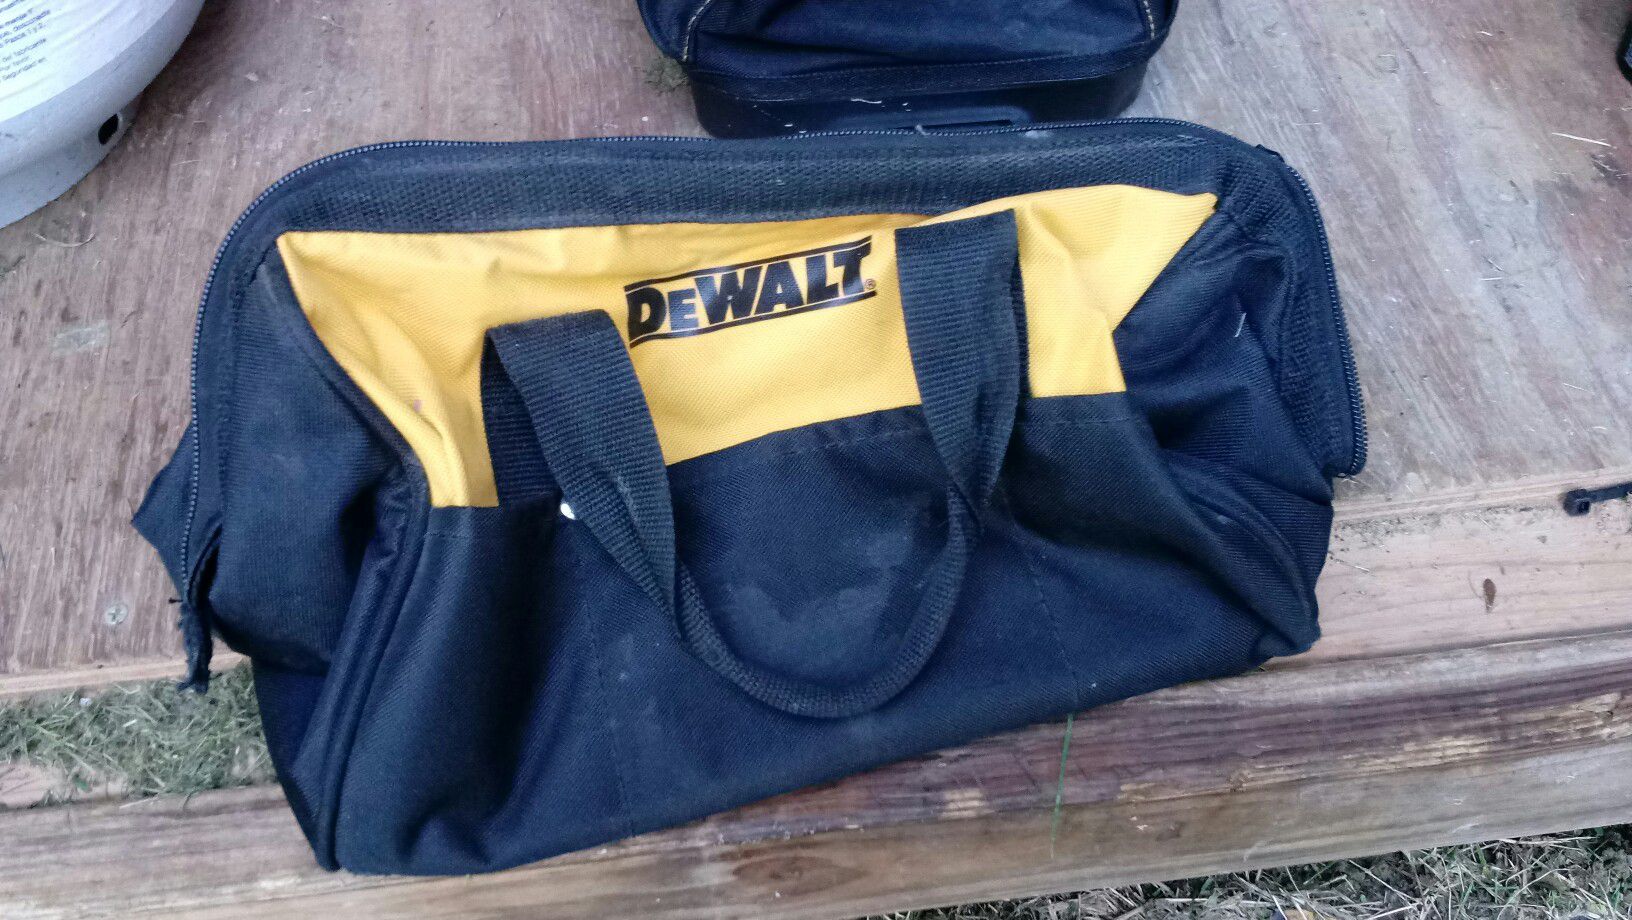 Dewalt /Bostitch tool bag